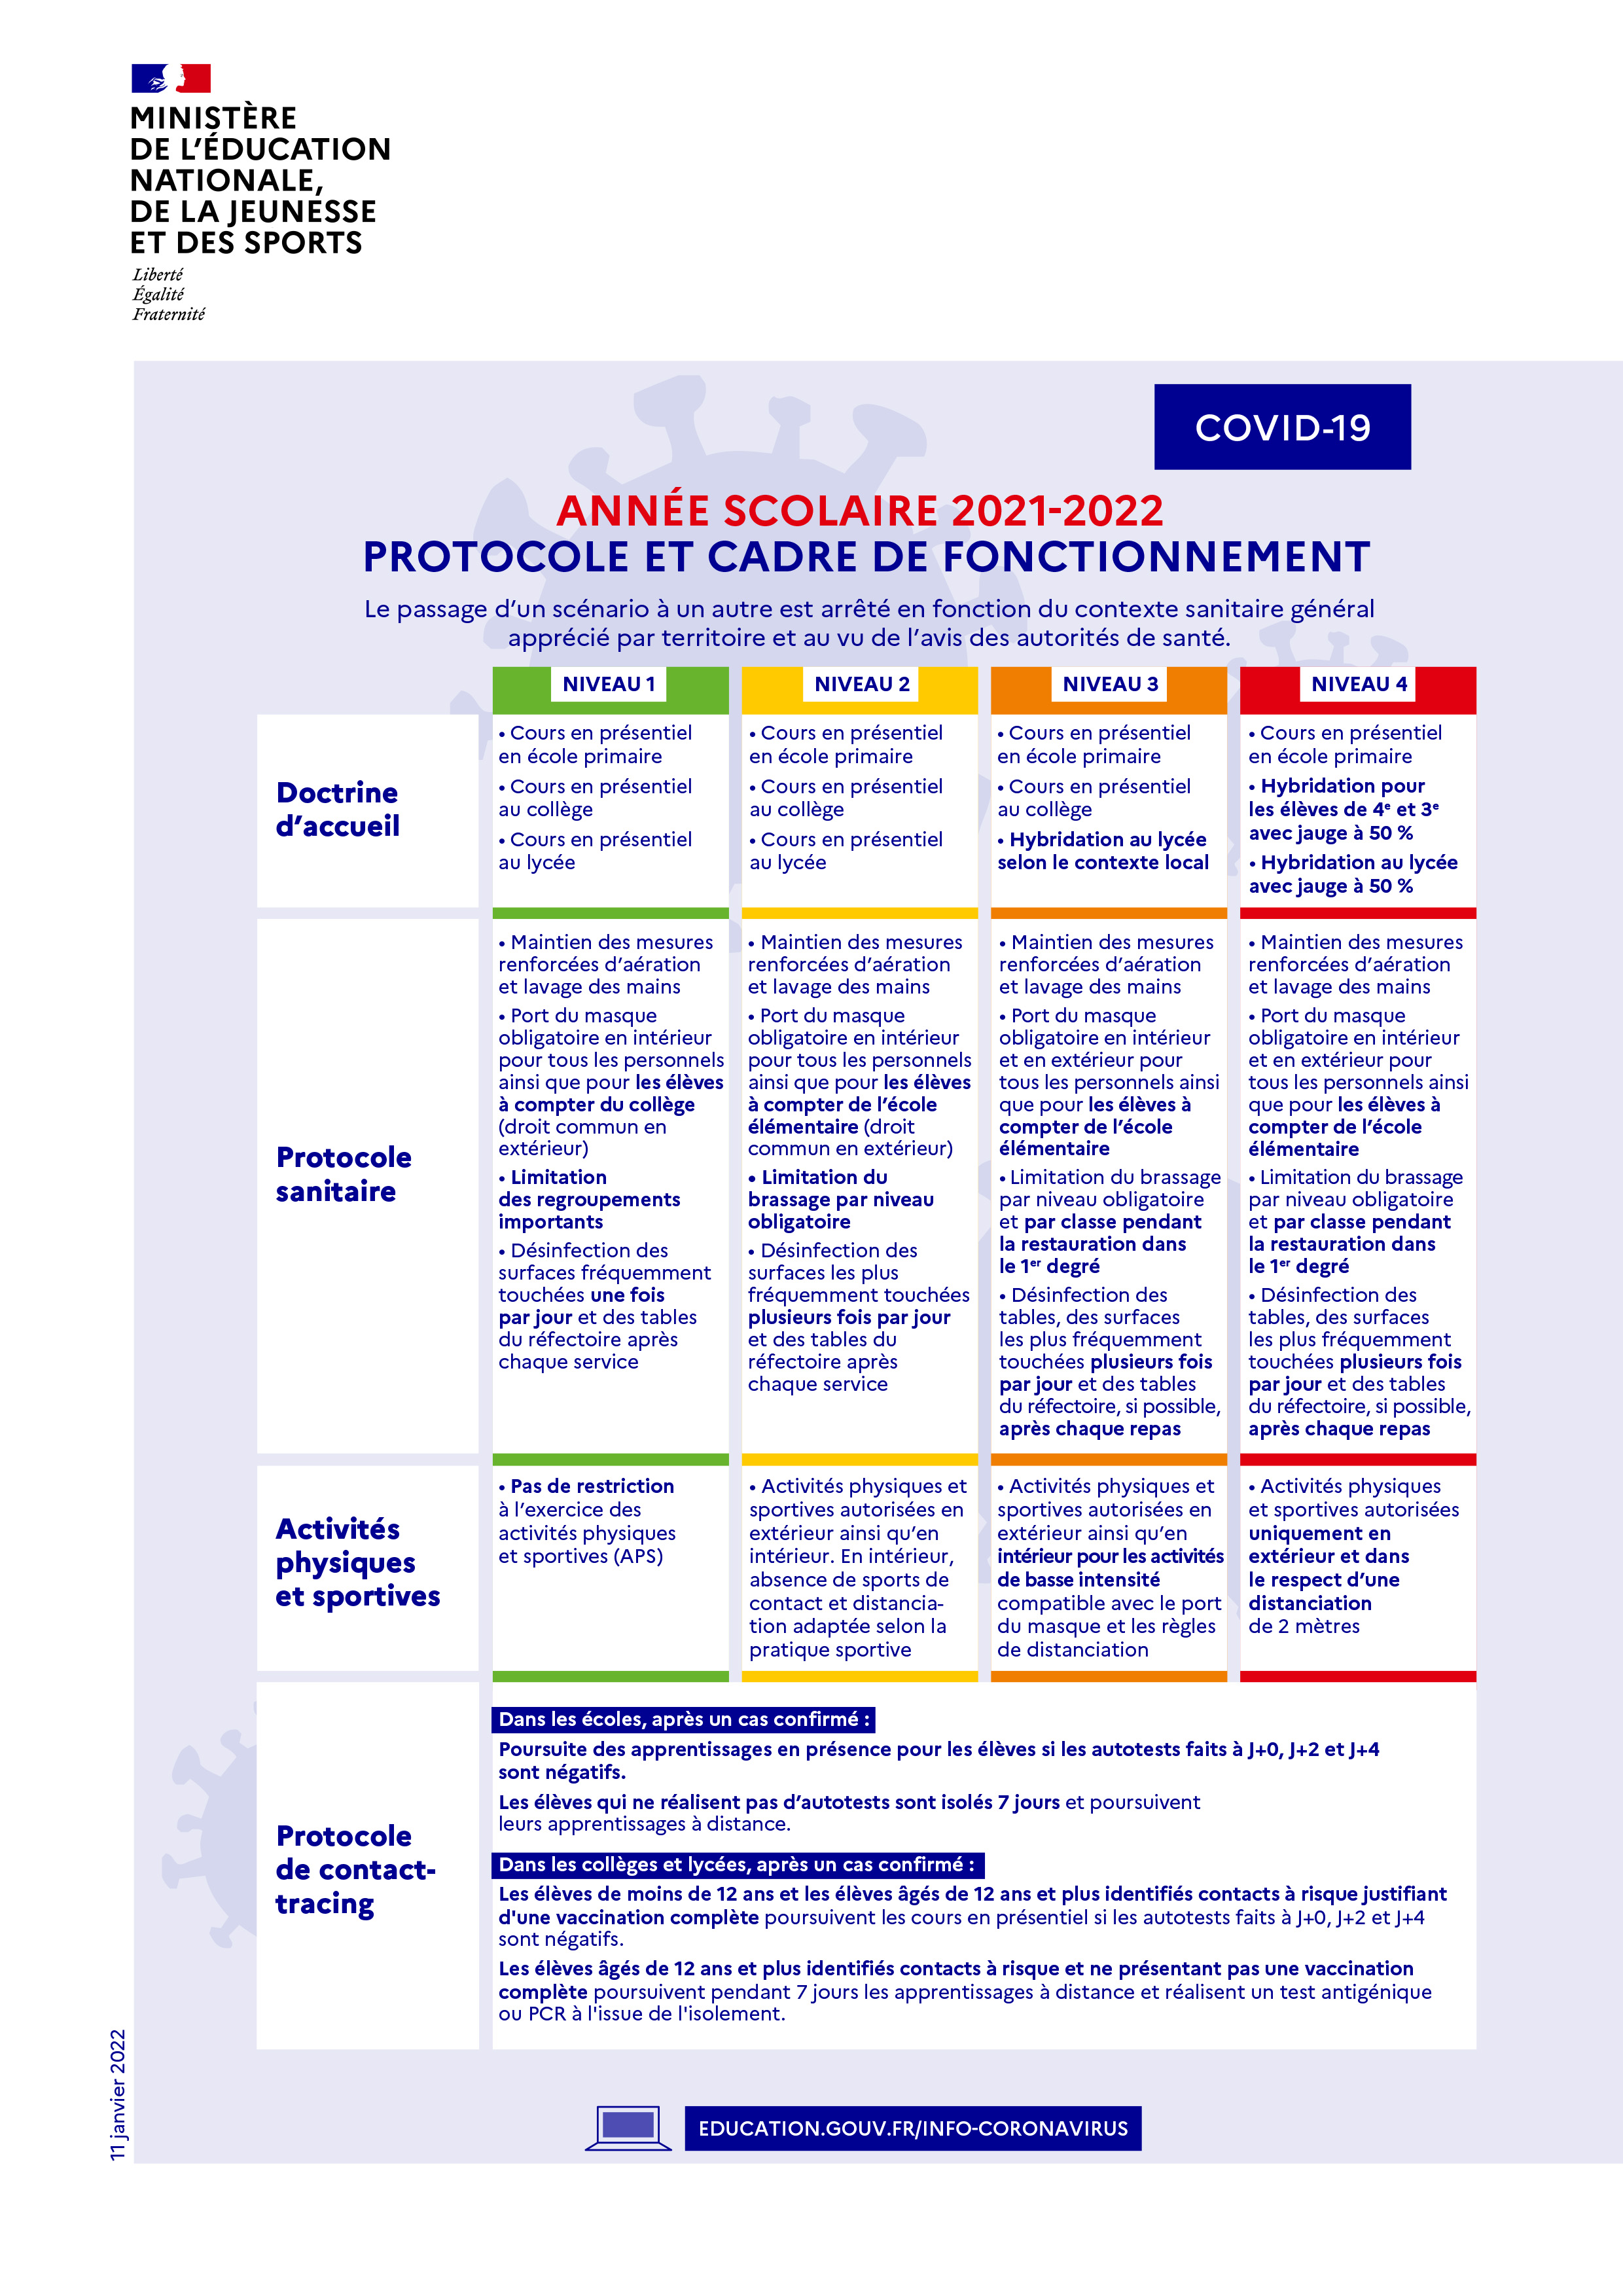 Année scolaire 2021-2022 : protocole et cadre de fonctionnement